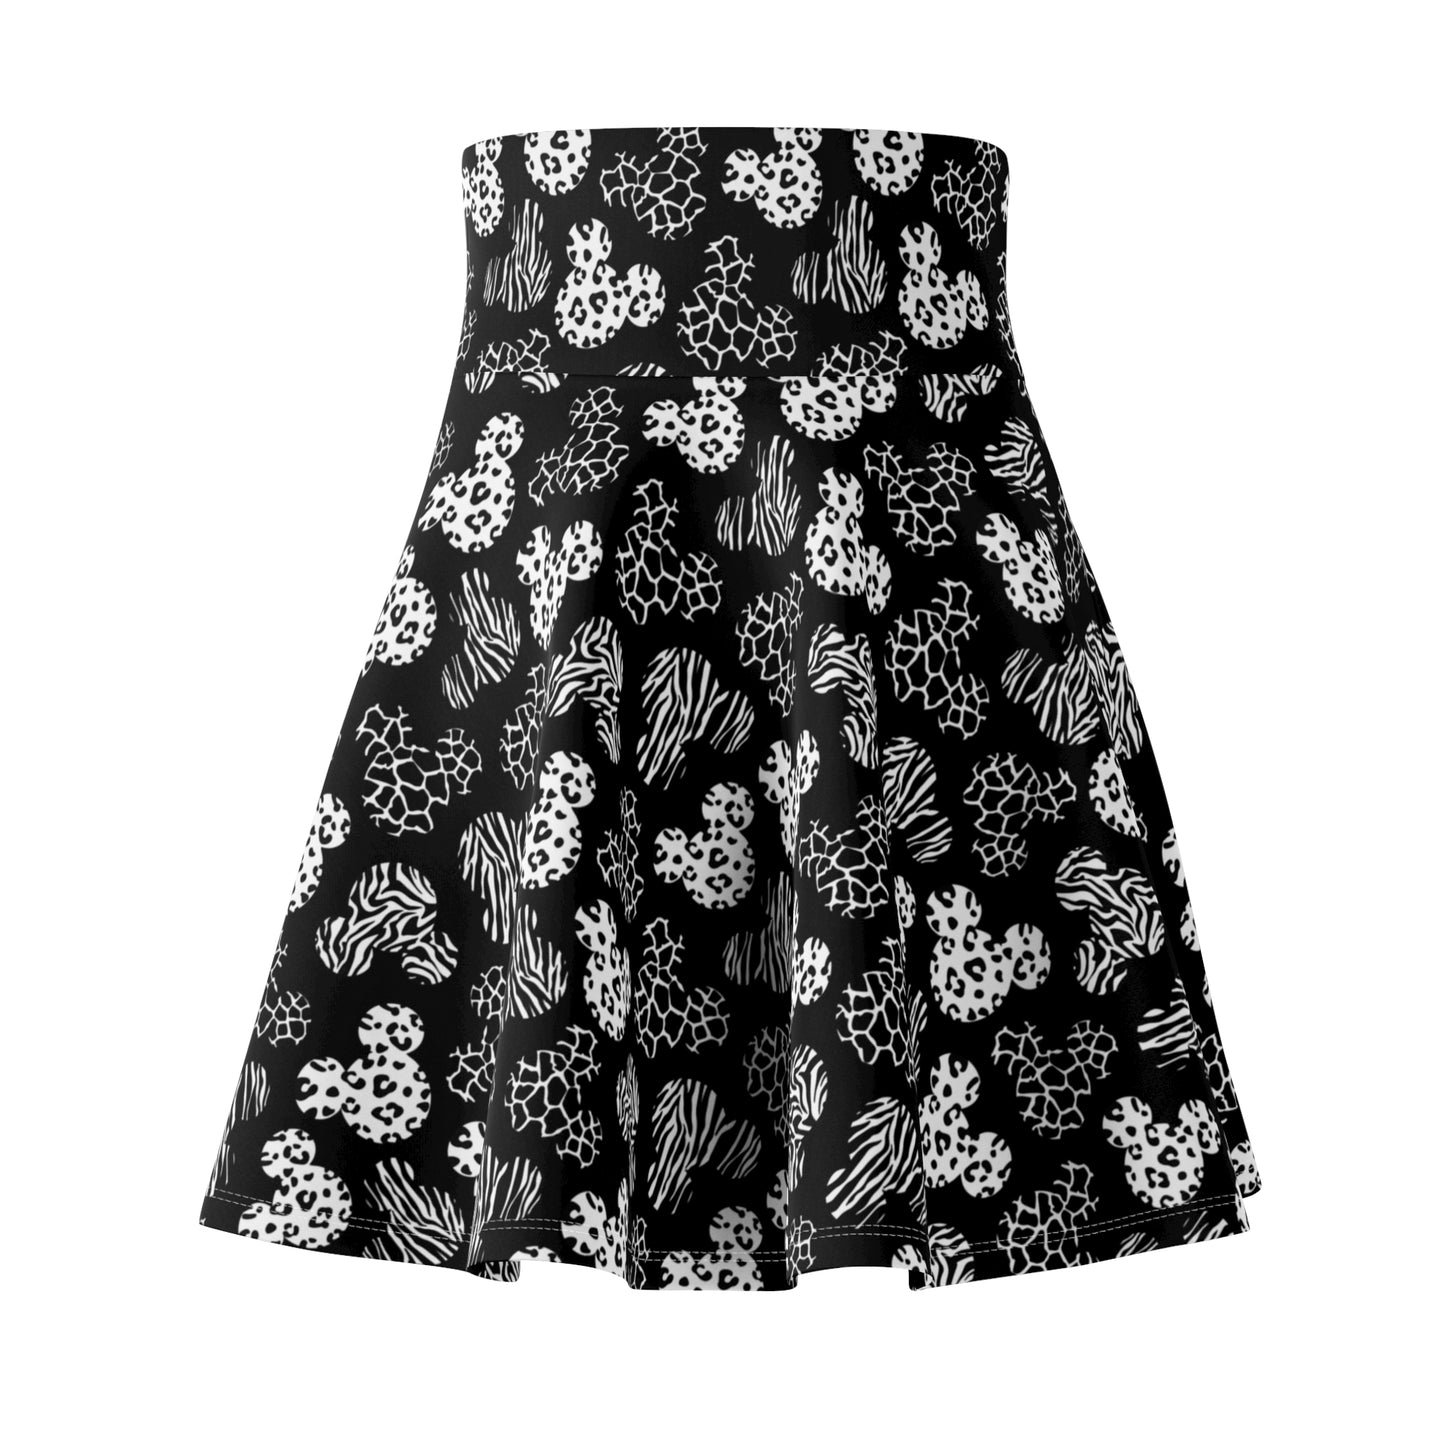 Black And White Animal Prints Women's Skater Skirt